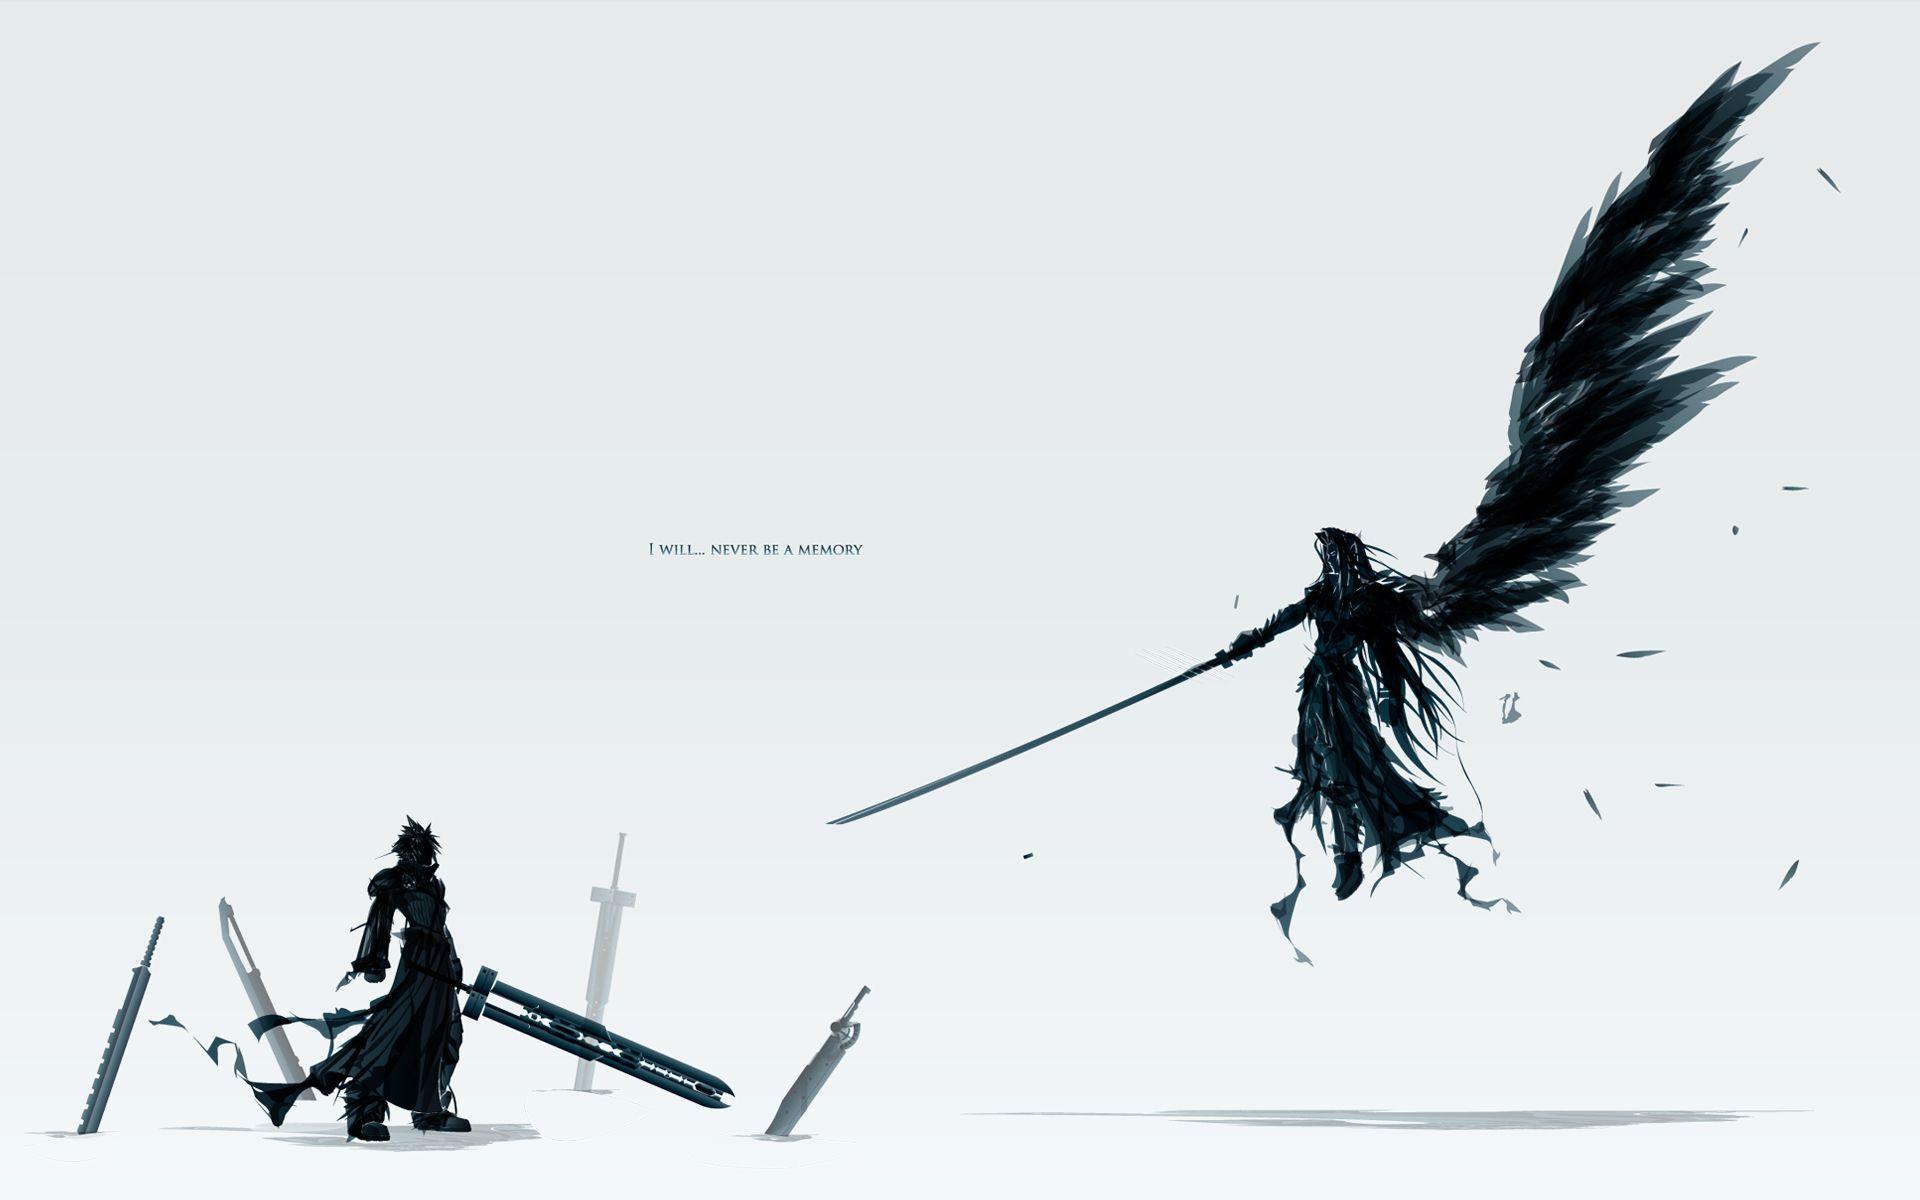 Final Fantasy XIII Snow Wallpaper by DanteArtWallpapers on DeviantArt